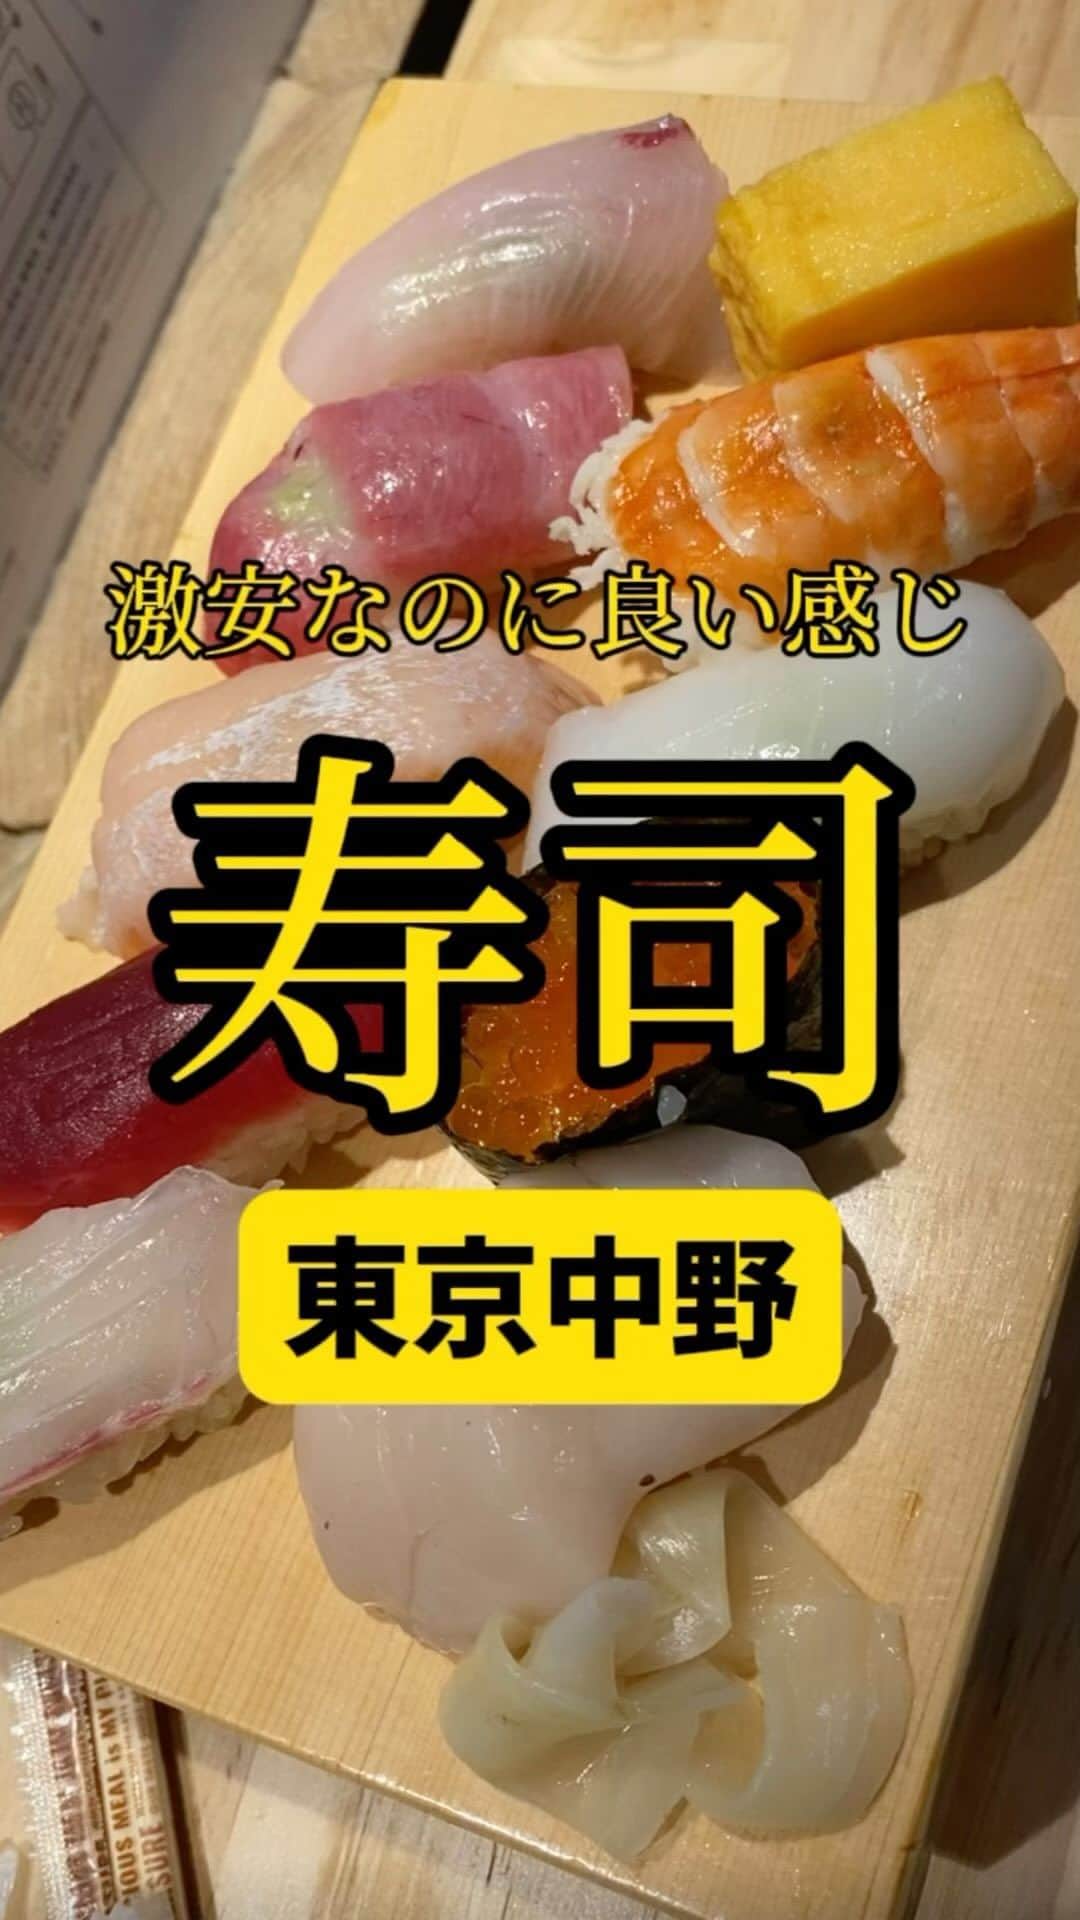 Mr.FISHEYE/魚眼男のインスタグラム：「激安なのに本格的な握りの立食い寿司🍣東京/中野「鮨 かつた」  (美味しいお店など情報をなるべく早めに紹介するので @ryo_onoma をお願いします🙇‍♂️)  立ち食い寿司がどんどん増えている印象がある。とても良いことだ。しかし立ち食いなのにそのエモ？を逆手に取るだけとって少々値段が高いところも多い。そうじゃないだろうか。ここはそうじゃ無い。いやかなり安い印象もある。なぜそうできるか。それは隣の鮮魚店がやっているからで、鮮魚店の仕入れで仕入れ自体を安くできているようだ。間違っていたらすみません。詳しい人詳細、正しい情報をください、お願いします。ただ残念なところもある。それは醤油だ。あの安いプラスチックに入ってるやつだ。寿司はできるだけちゃんとした美味い醤油で食べたい。口に運ぶまでできるだけ美味い状態で運びたい。そこだけは何とかならないか。この投稿が届けば嬉しい。醤油が変わるだけでめちゃくちゃ旨さが変わると思うんだがどうか。醤油に関するこめも待ってます。勿論立ち食い寿司に関する情報も。あのお店すごく美味い！とかとか。  【鮨 かつた】 📍東京都中野区中野5-52-15 中野ブロードウェイ B1F 📲不明 🈺土曜日の昼はやってた 🚶‍♂️中野駅から384m 🗒️頼んだメニュー：おまかせにぎり  #中野グルメ #中野ランチ #中野ブロードウェイ #寿司 #寿司ランチ #寿司屋 #寿司スタグラム #寿司好きな人と繋がりたい #寿司職人 #寿司大好き #寿司好き #お寿司 #お寿司屋さん #お寿司大好き #お寿司好きな人と繋がりたい #立ち食い #立ち食い寿司 #東京グルメ #東京ランチ #グルメ好きな人と繋がりたい」